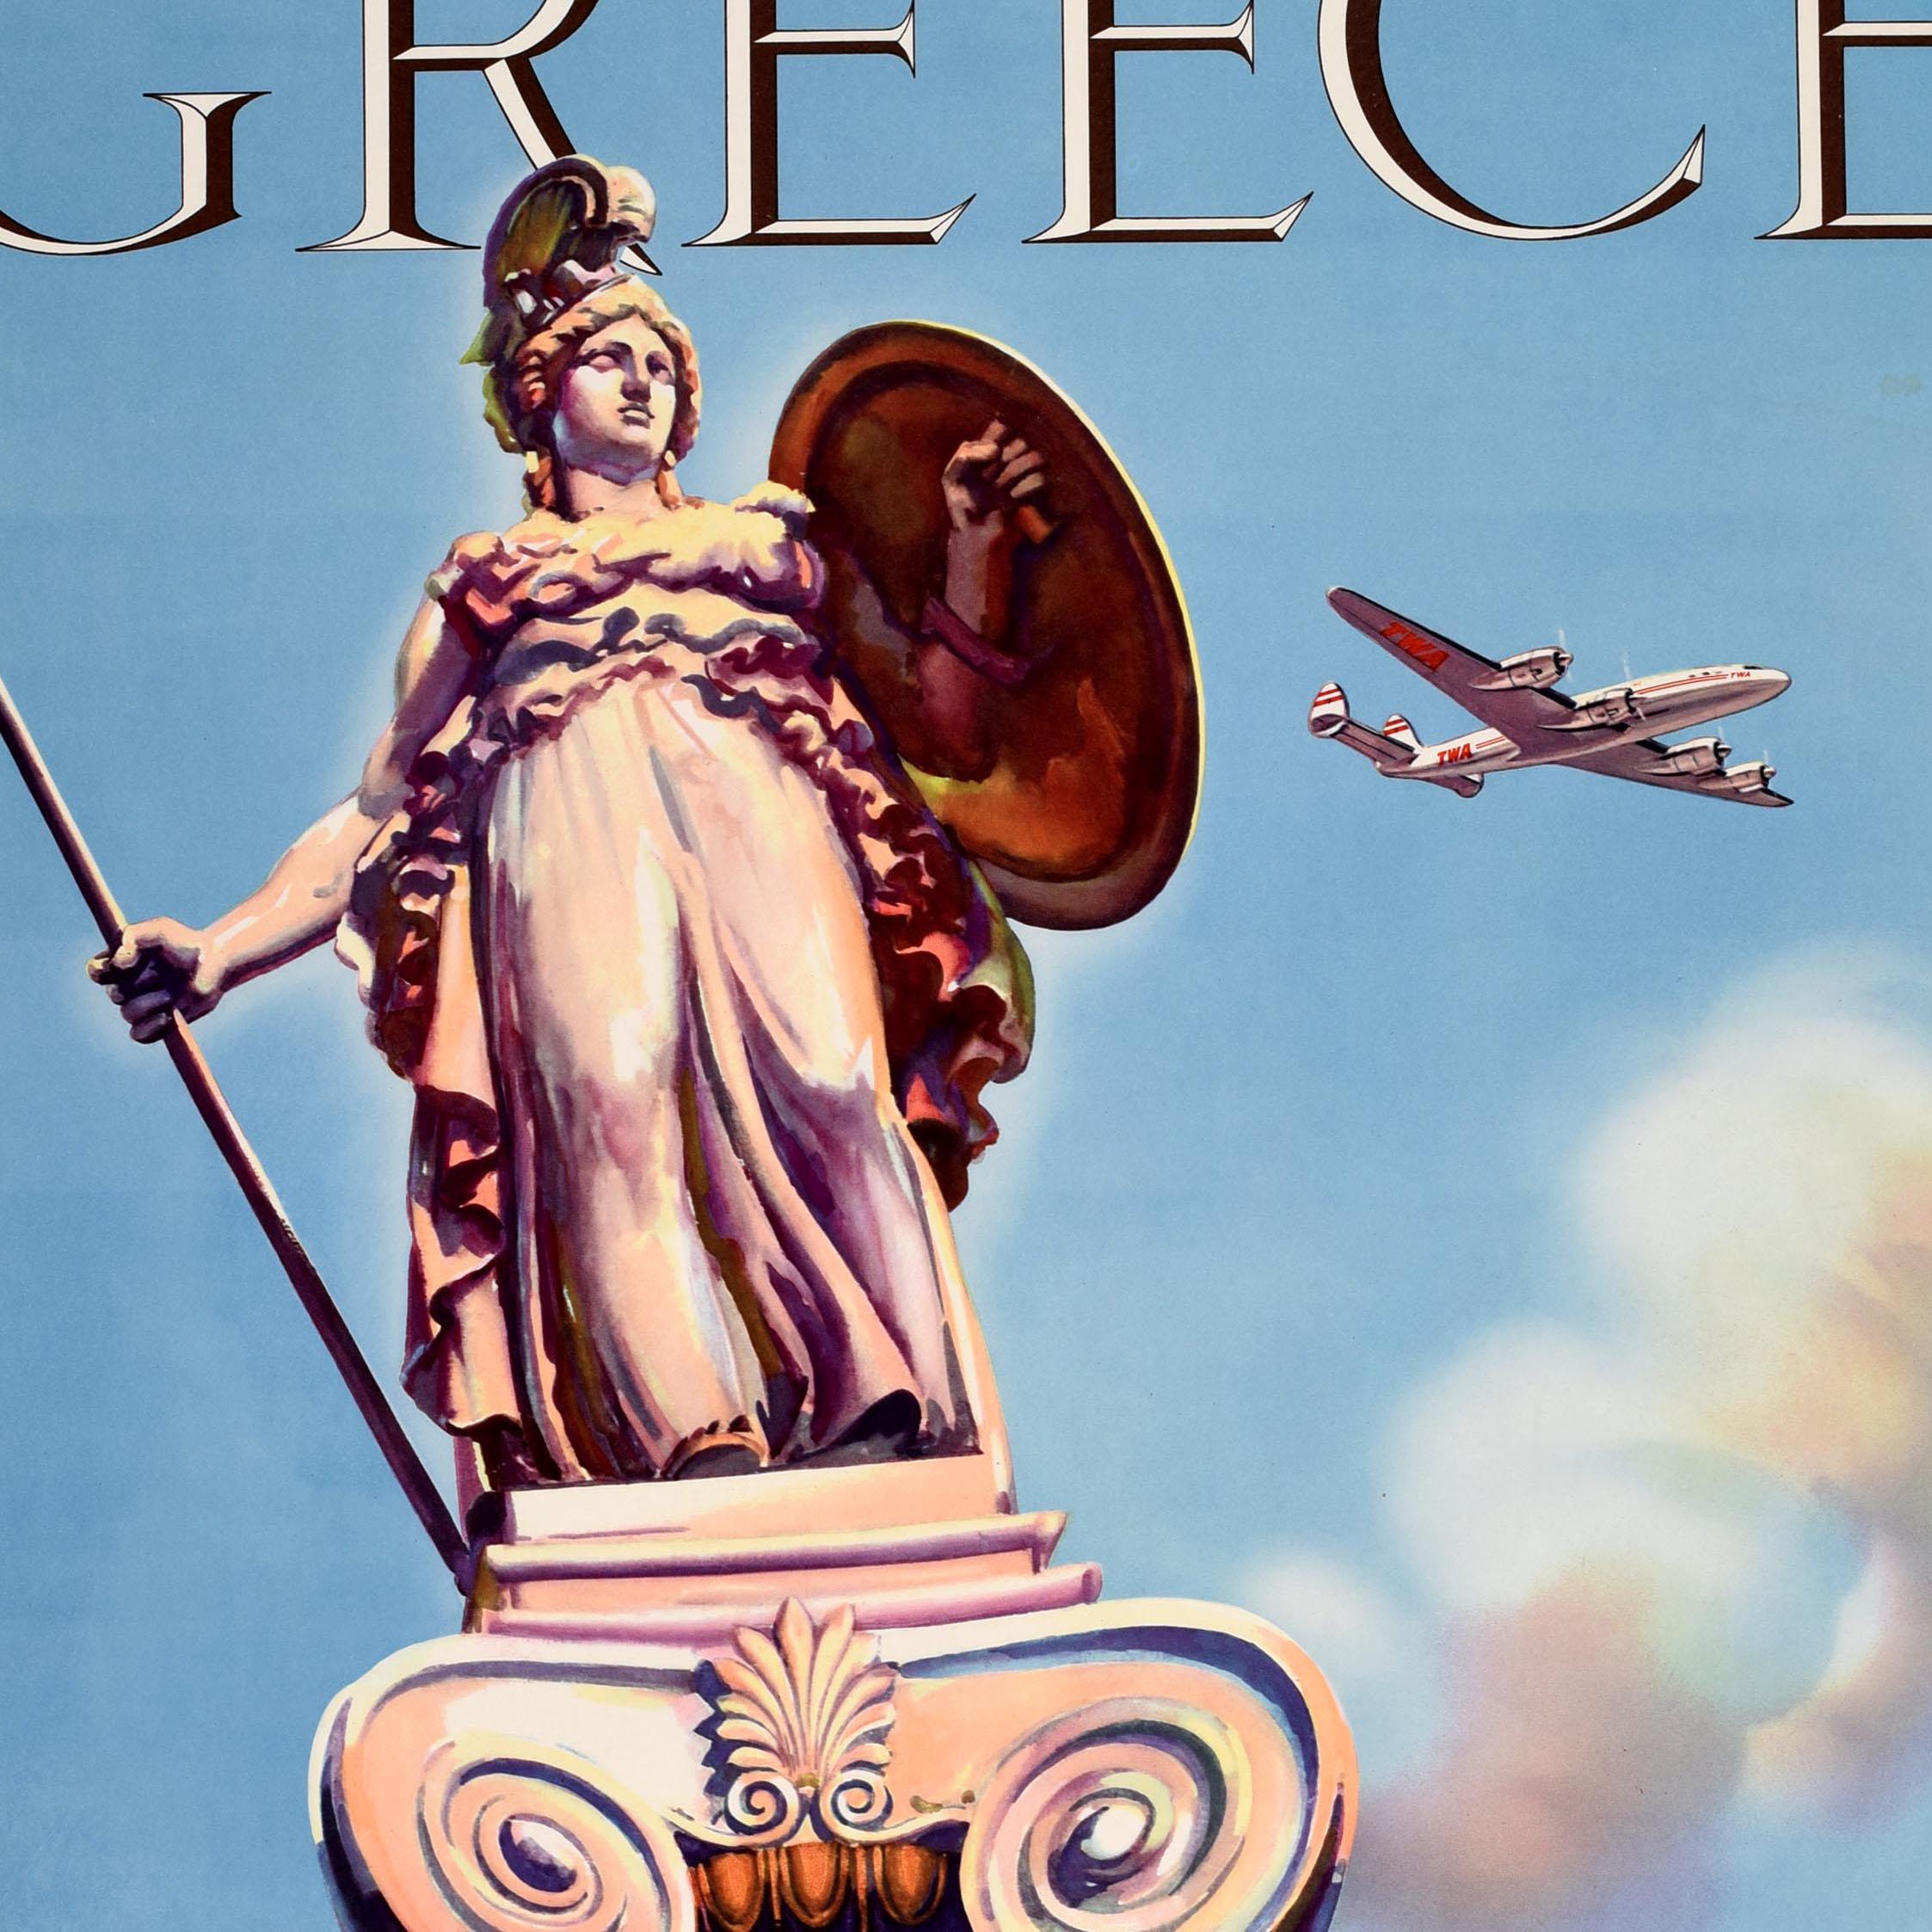 Affiche de voyage vintage originale - Fly TWA Greece Trans World Airlines - représentant une statue de la déesse grecque Athéna tenant un bouclier et une lance au sommet d'une colonne décorative (l'une des deux statues de l'Académie d'Athènes en